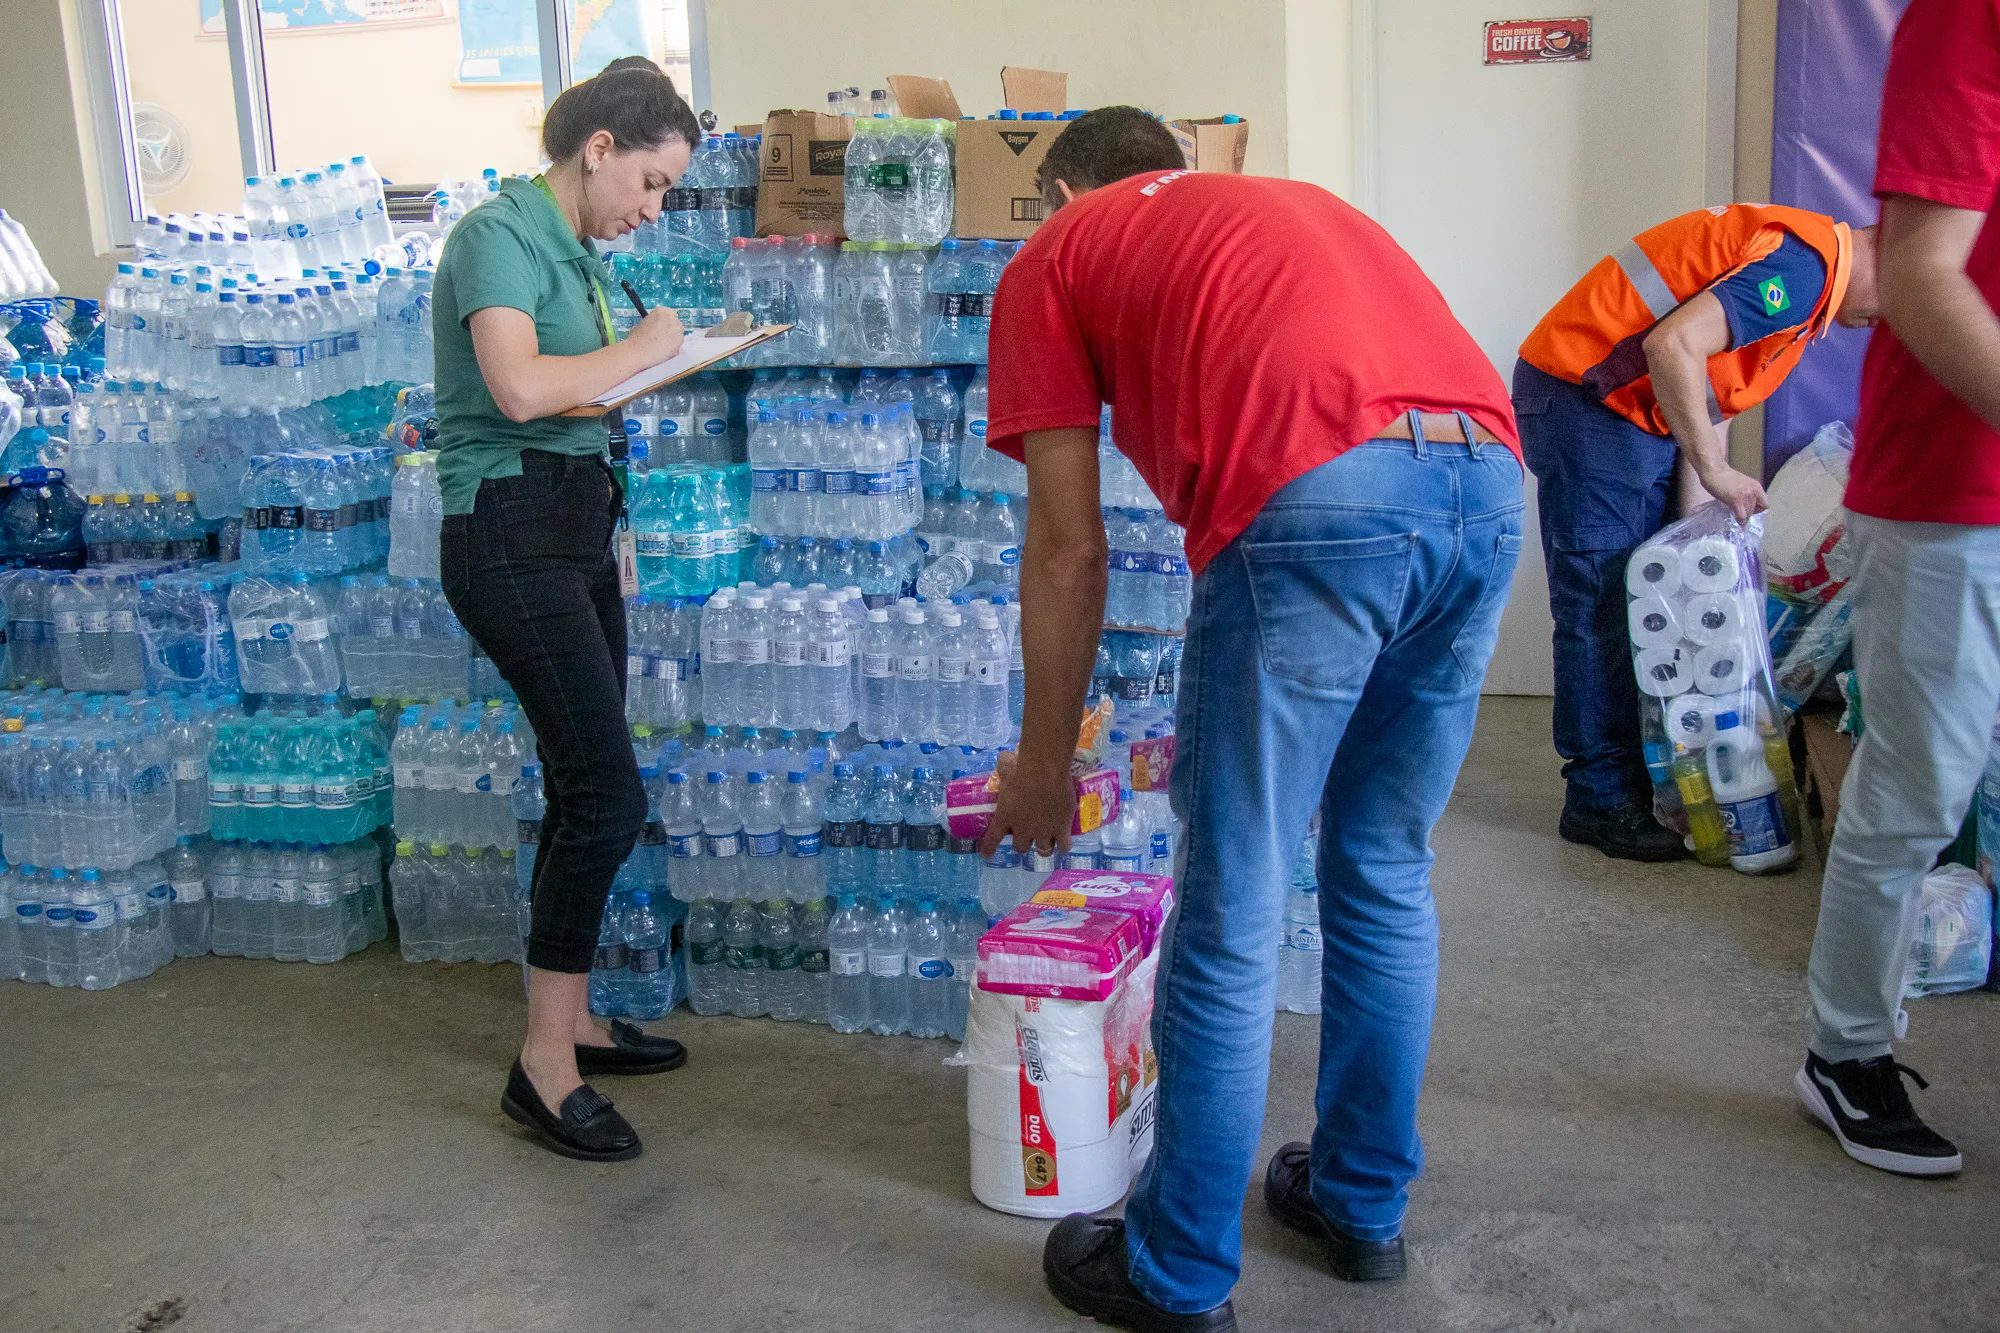 Cadastro de voluntários para ajudar aos afetados pelas enchentes no Rio Grande do Sul.